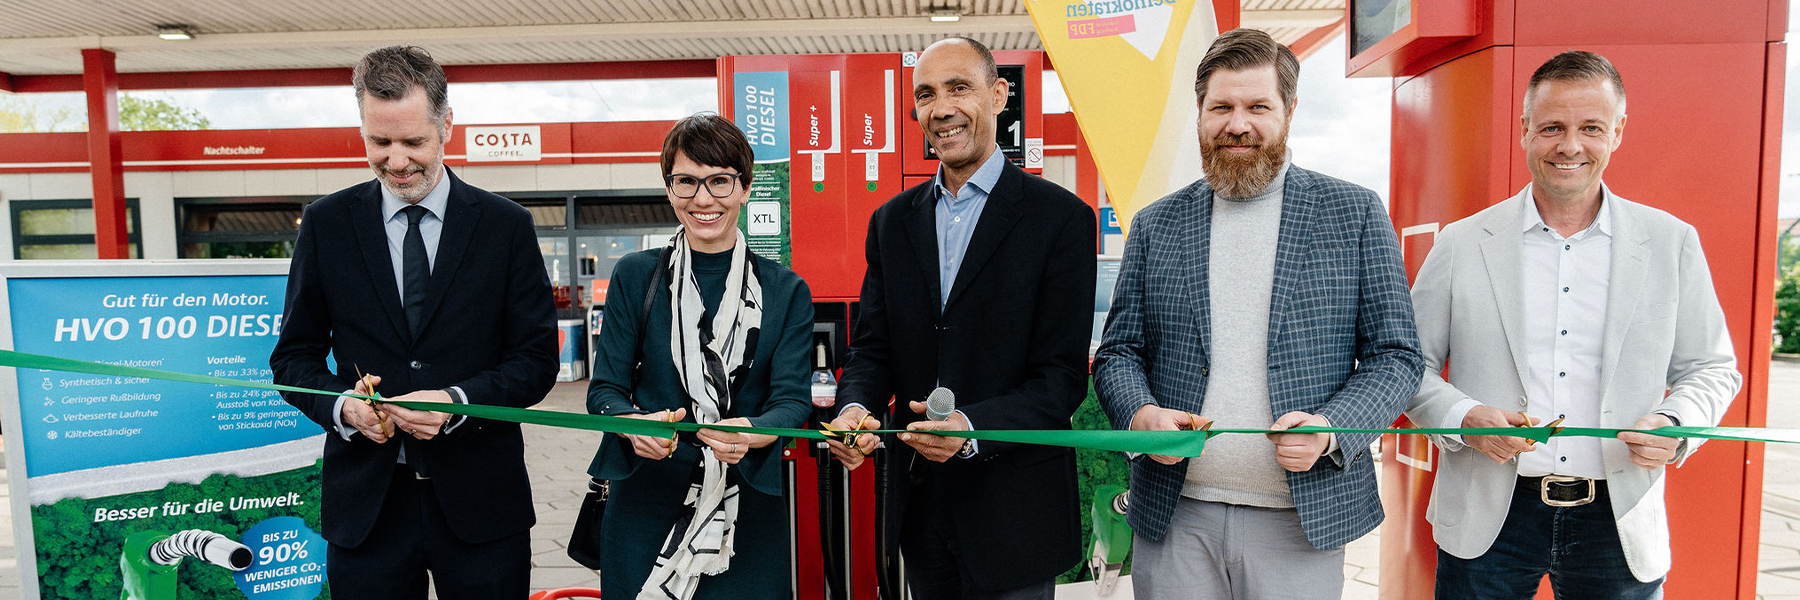 Erste Tankstelle in Berlin eröffnet Zapfsäule mit HVO 100 Diesel